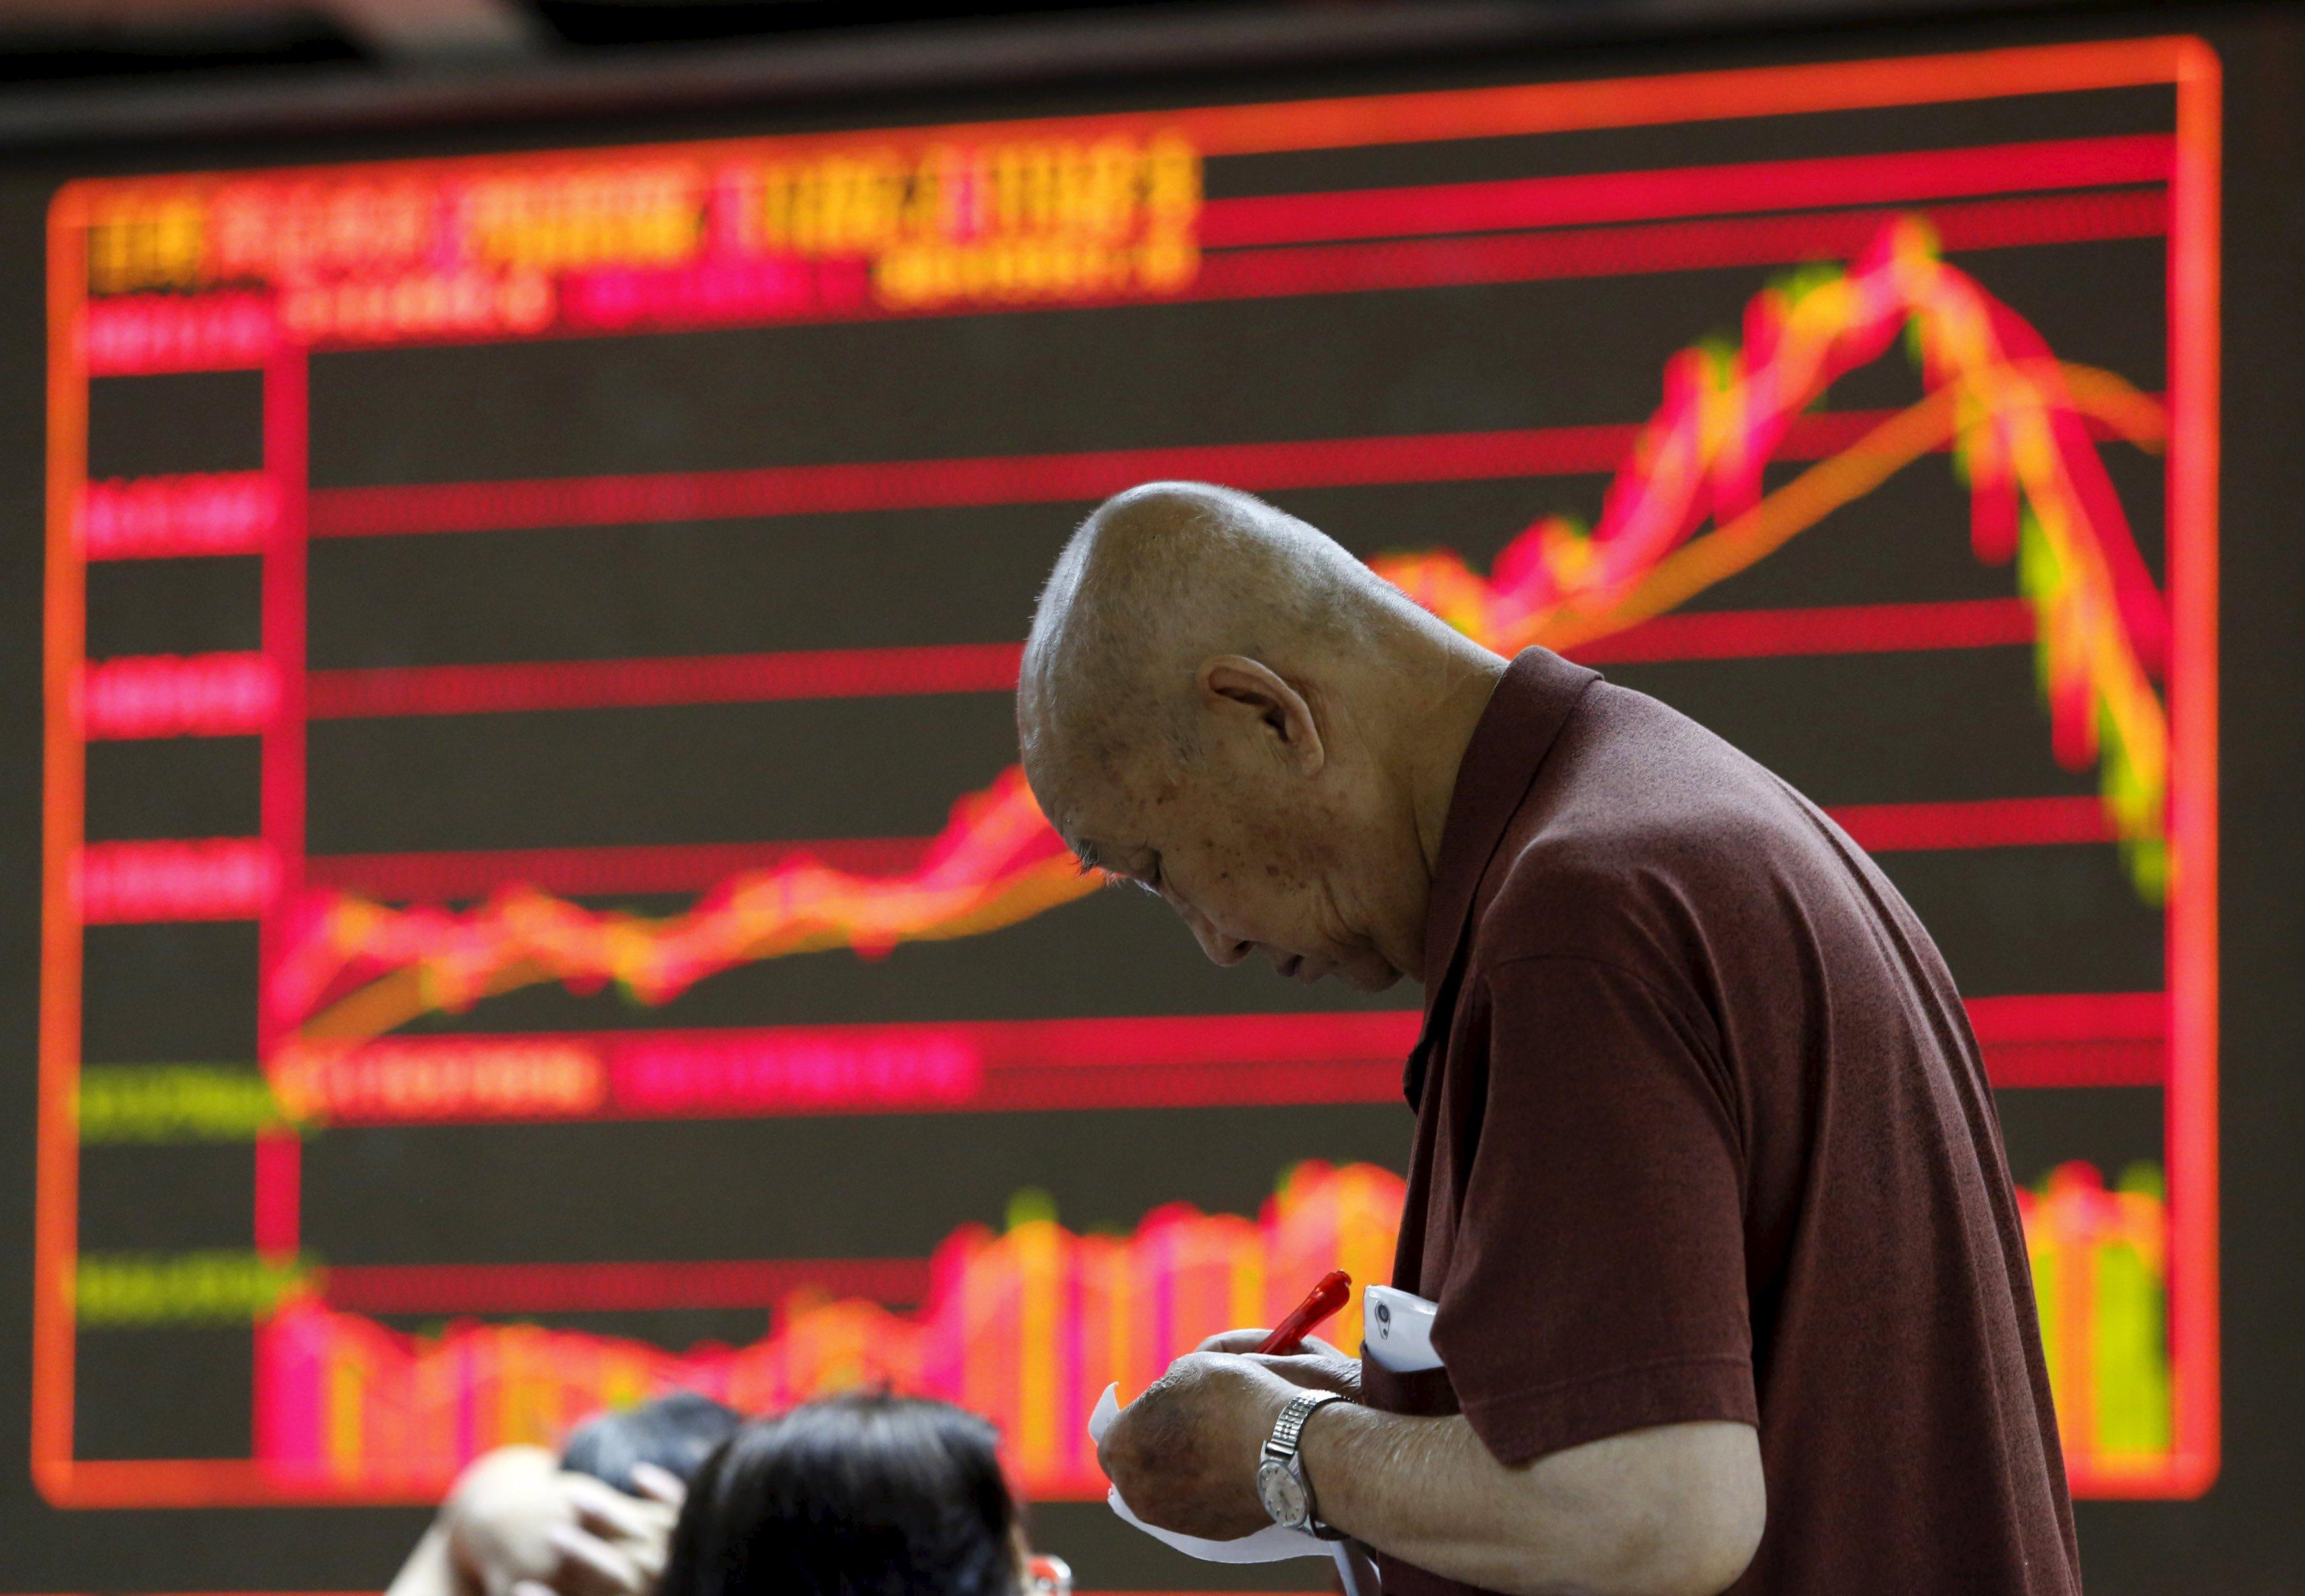 Benarkah China Jadi Pemicu Krisis Ekonomi ke Depan?